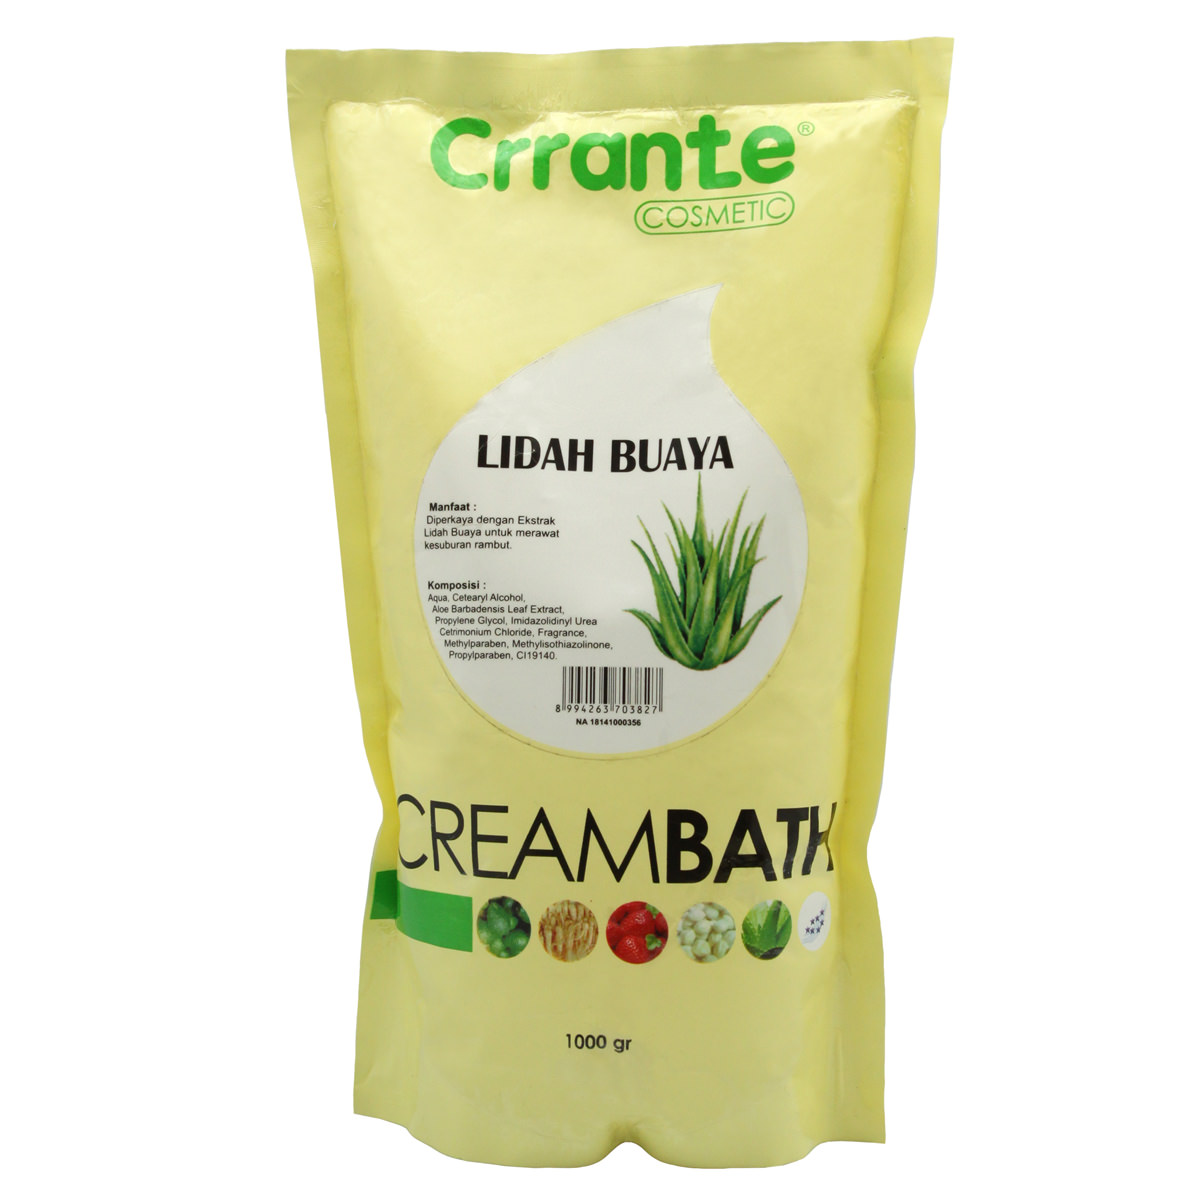 Crrante-Creambath-Lidah-Buaya-Refill-high-sfw(1)